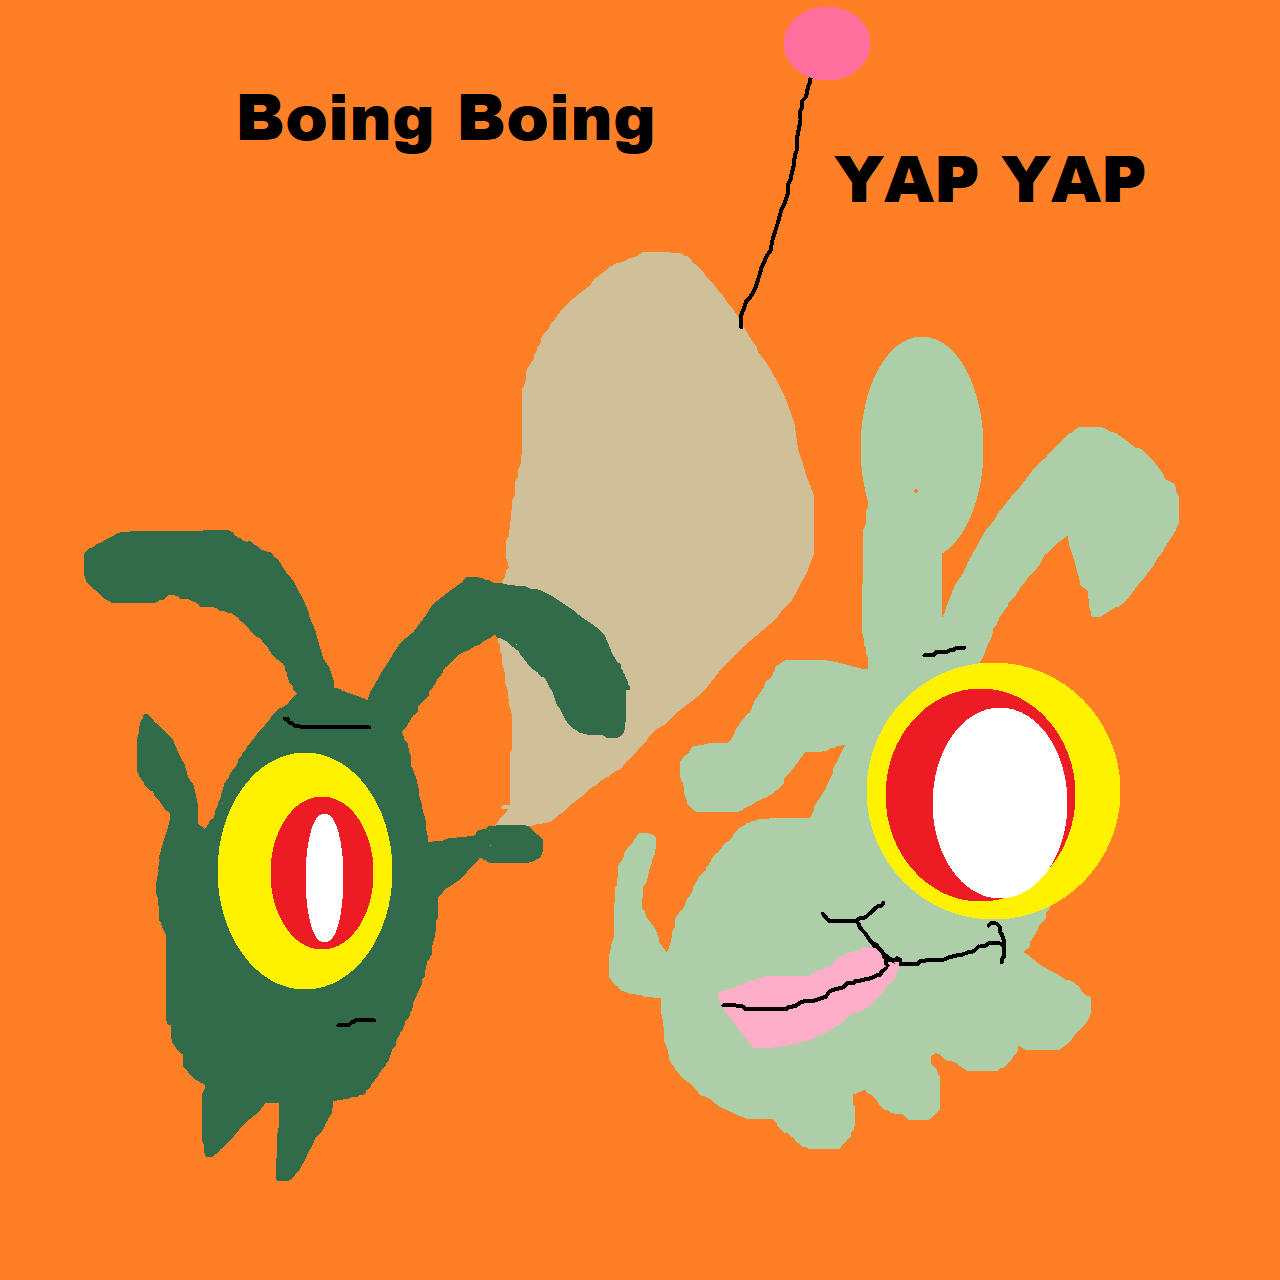 Boing Boing Yap Yap by Falconlobo